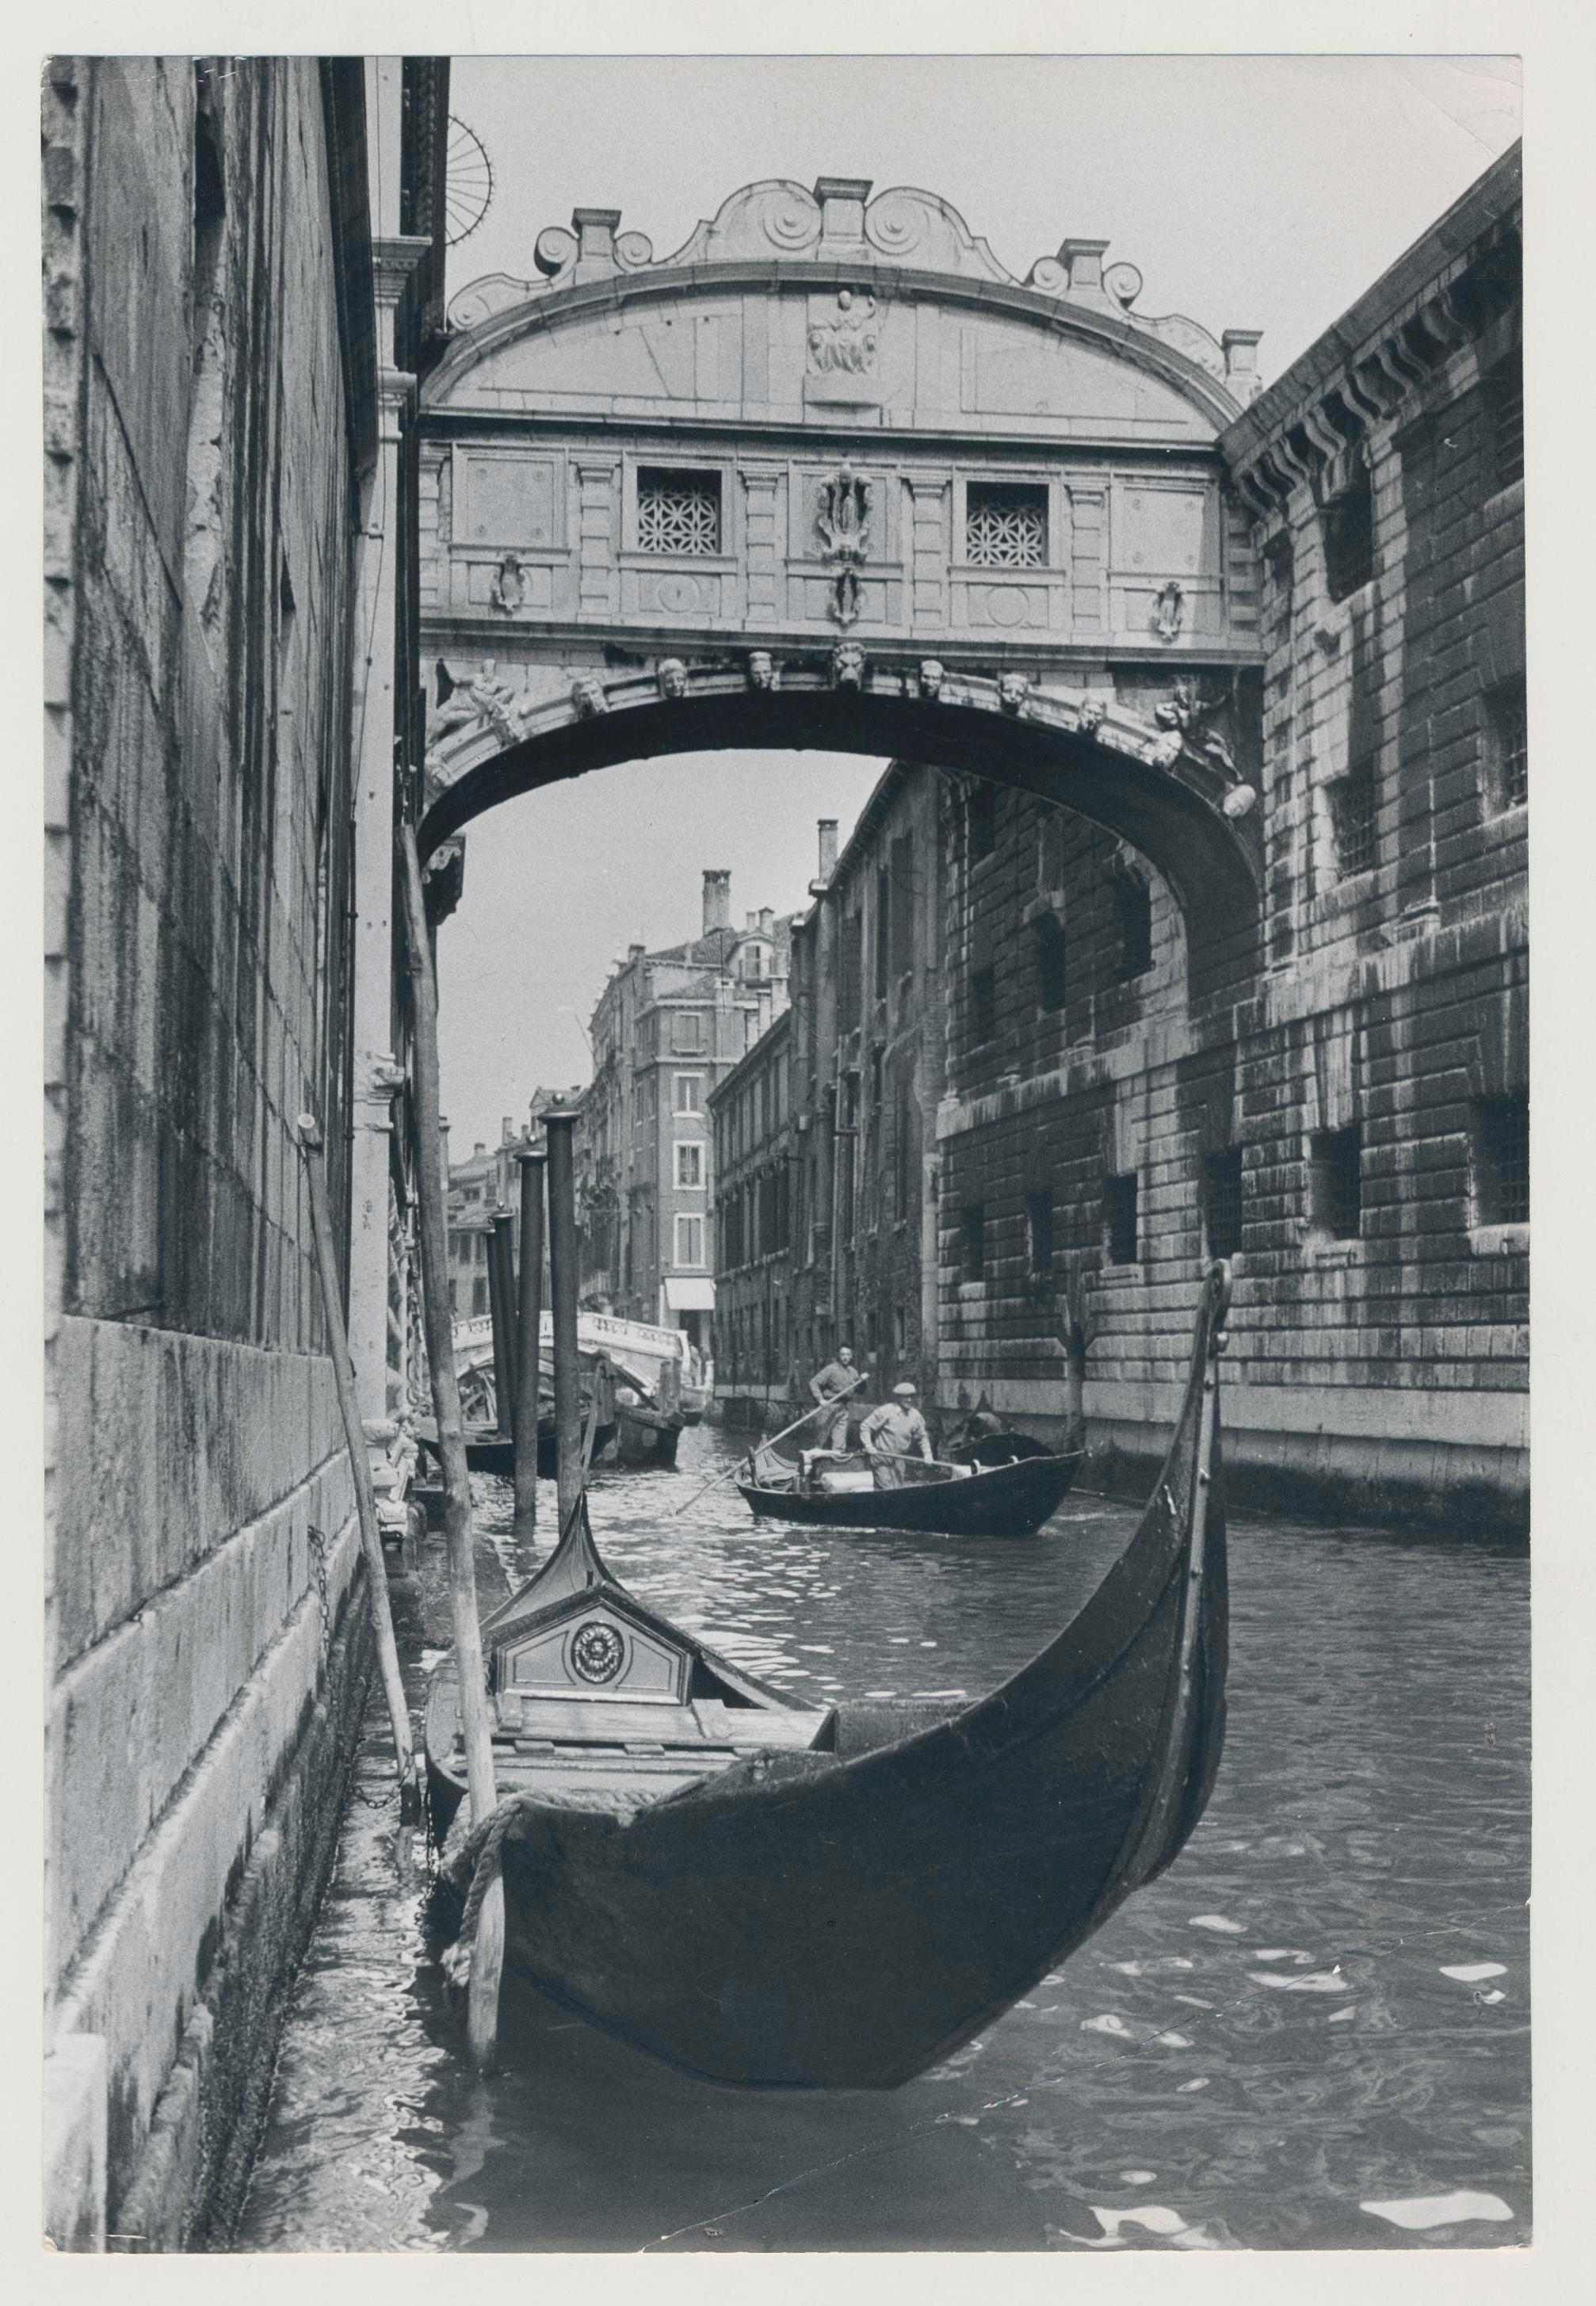 Erich Andres Black and White Photograph – Venice - Gondel auf Wasser und Segelbrücke von Segeln, Italien, 1950er Jahre